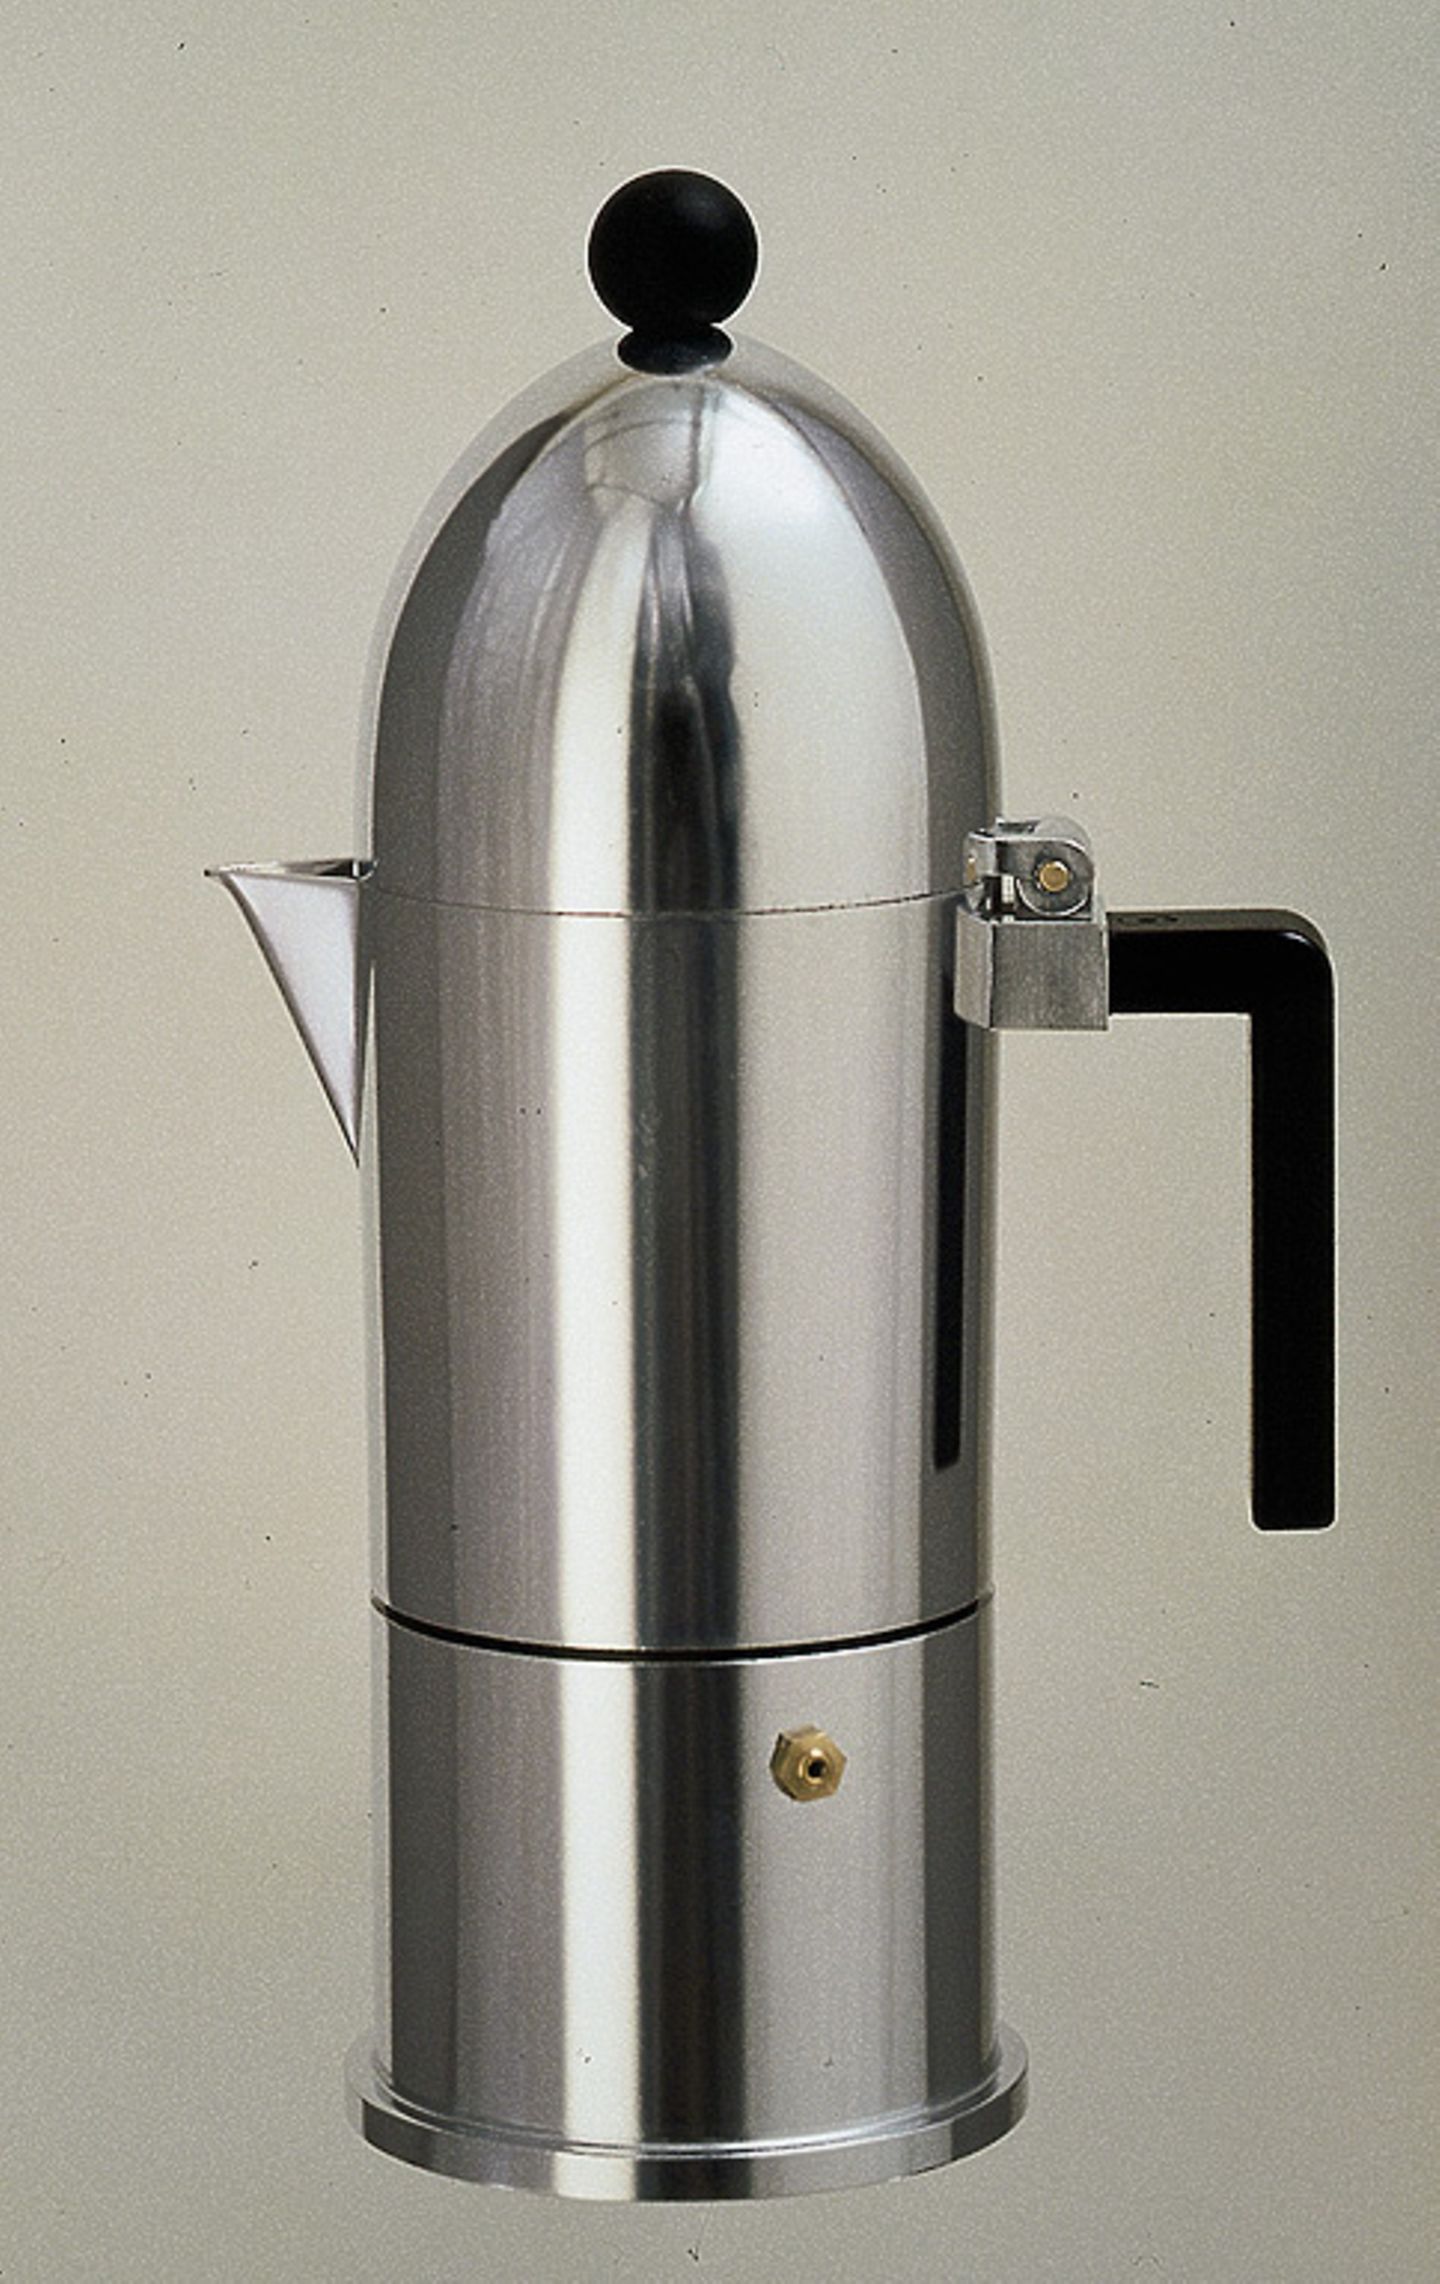 Kannen-Architektur: Espressokocher "La Cupola" von Aldo Rossi